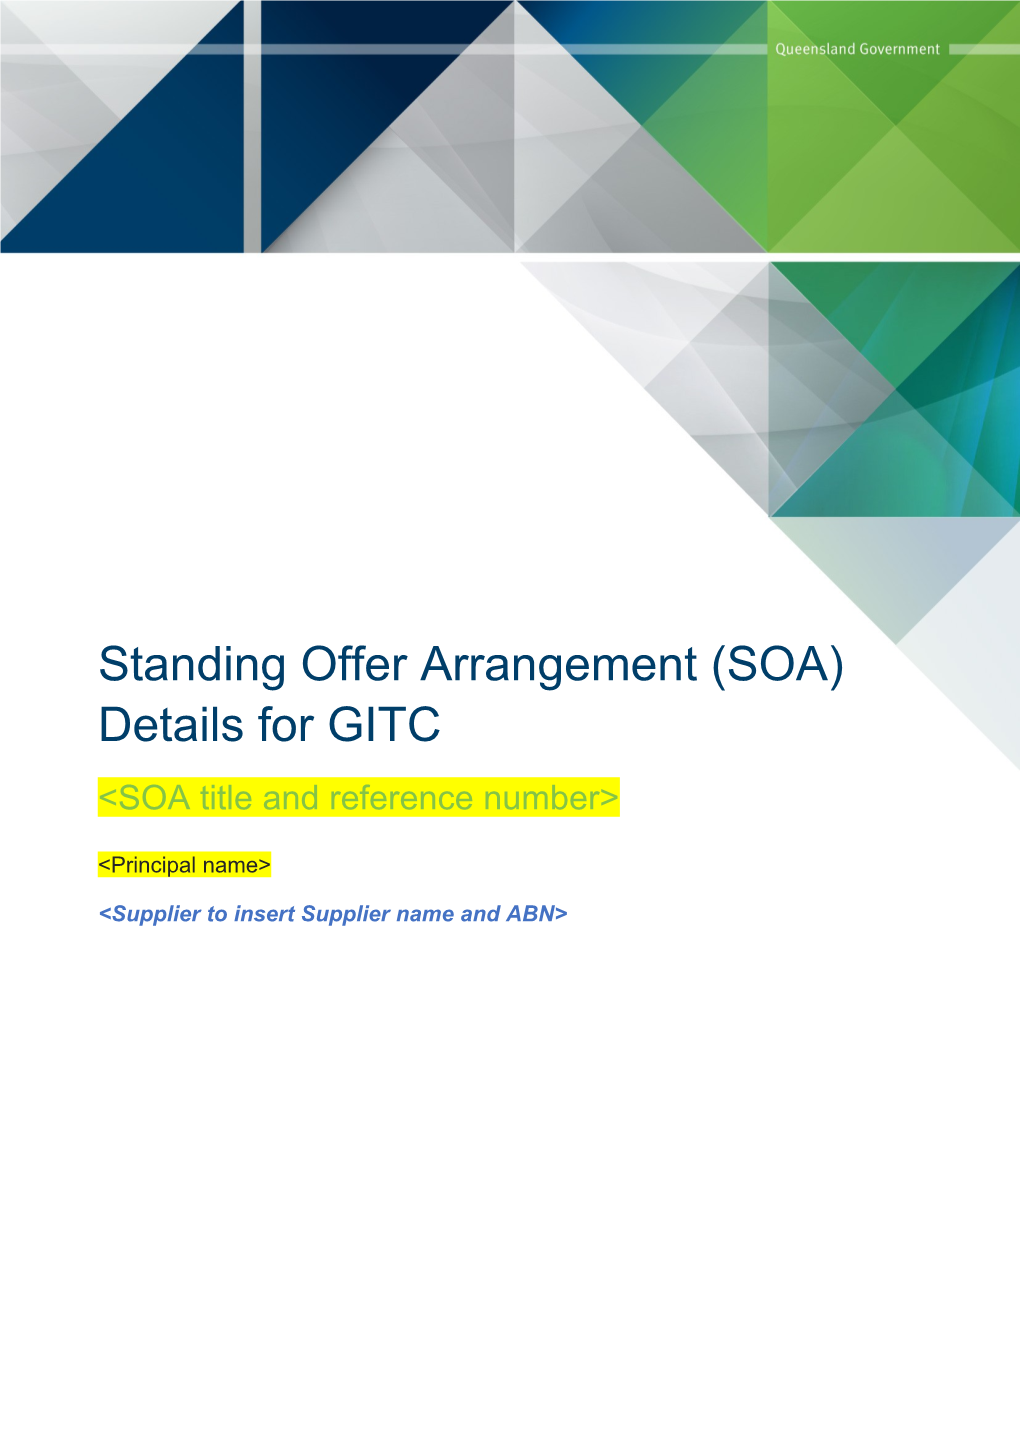 Standing Offer Arrangement (SOA) Details for GITC